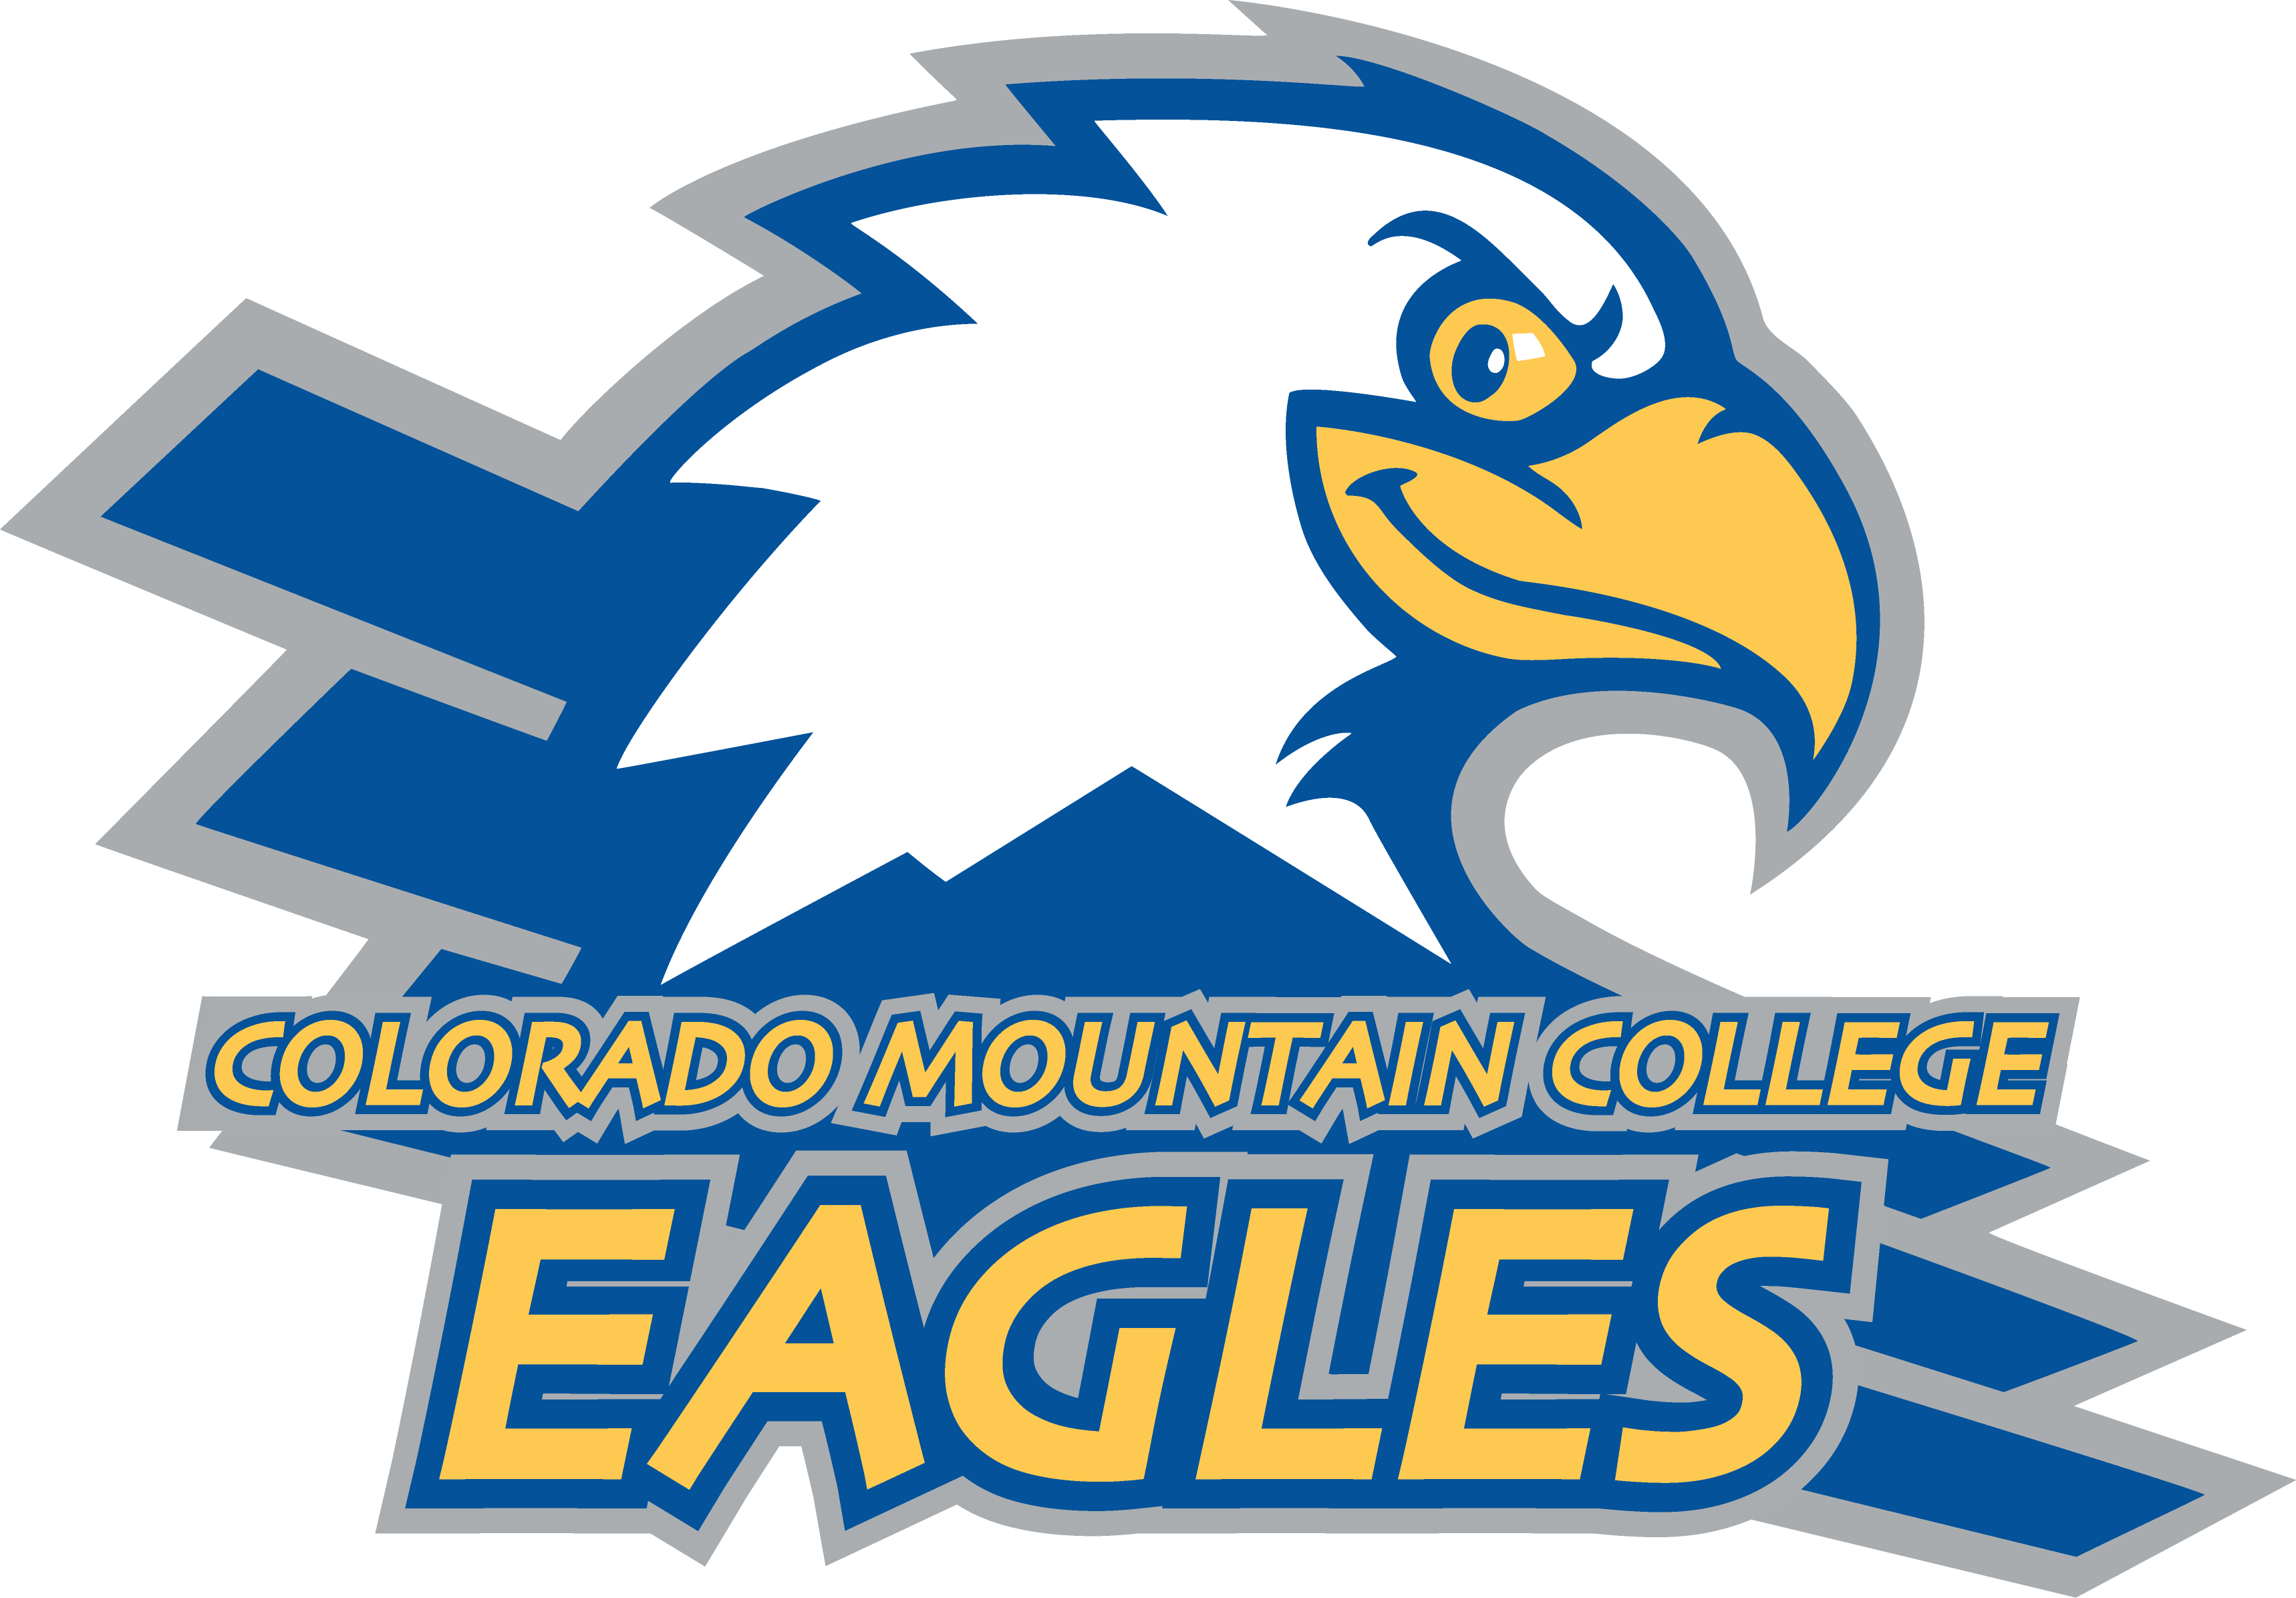 Colorado Mountain College Eagles logo